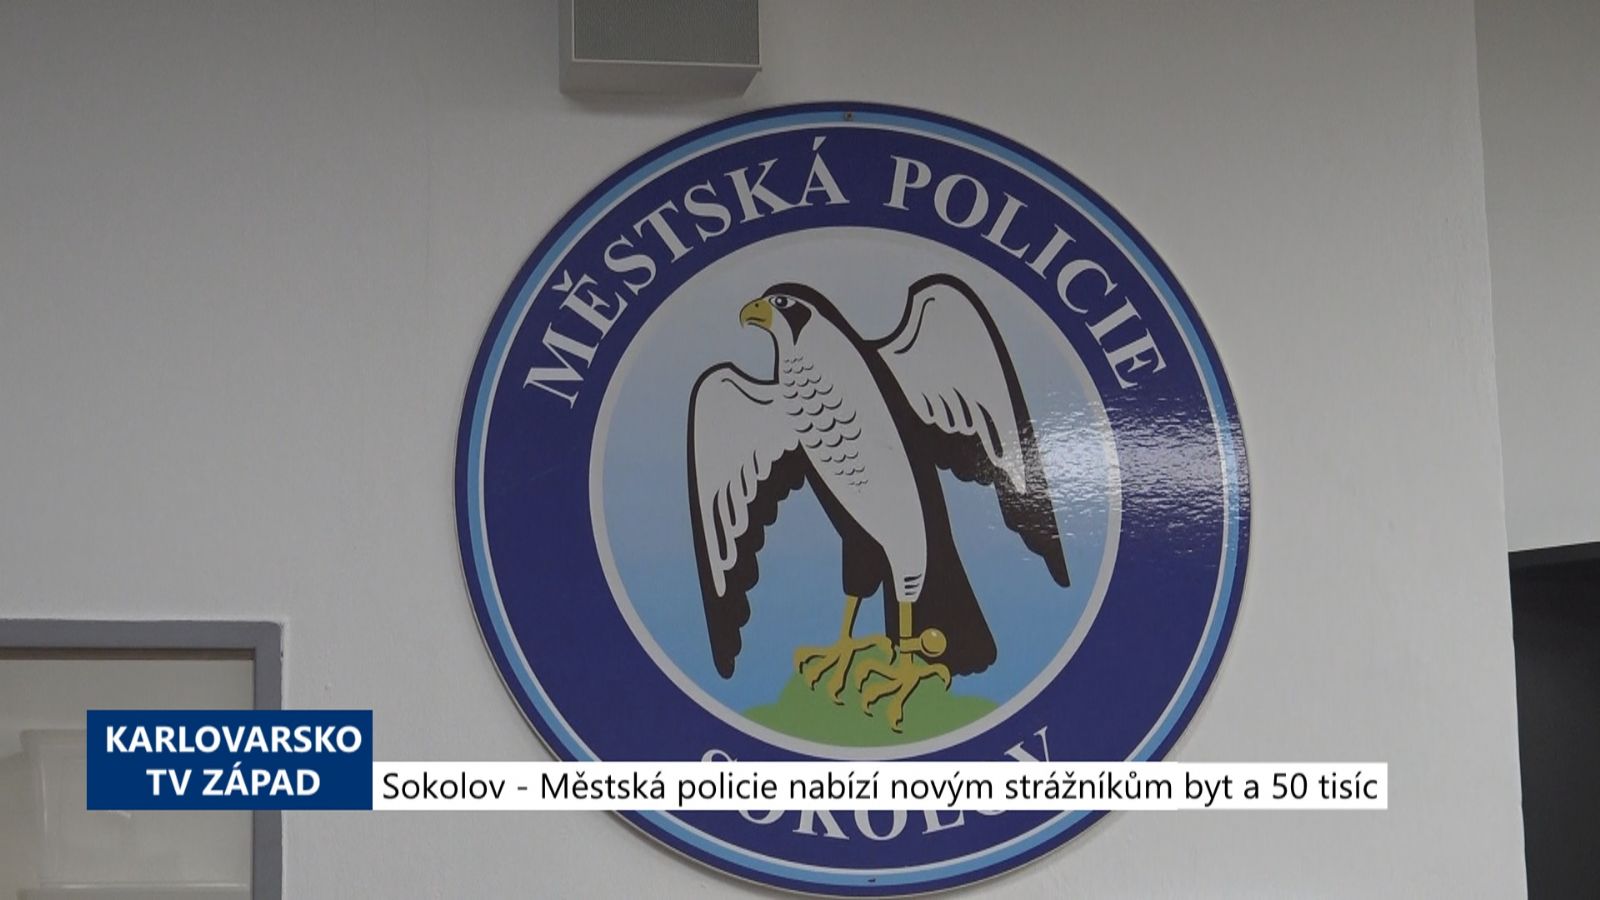 Sokolov: Městská policie nabízí novým strážníkům byt a 50 tisíc (TV Západ)